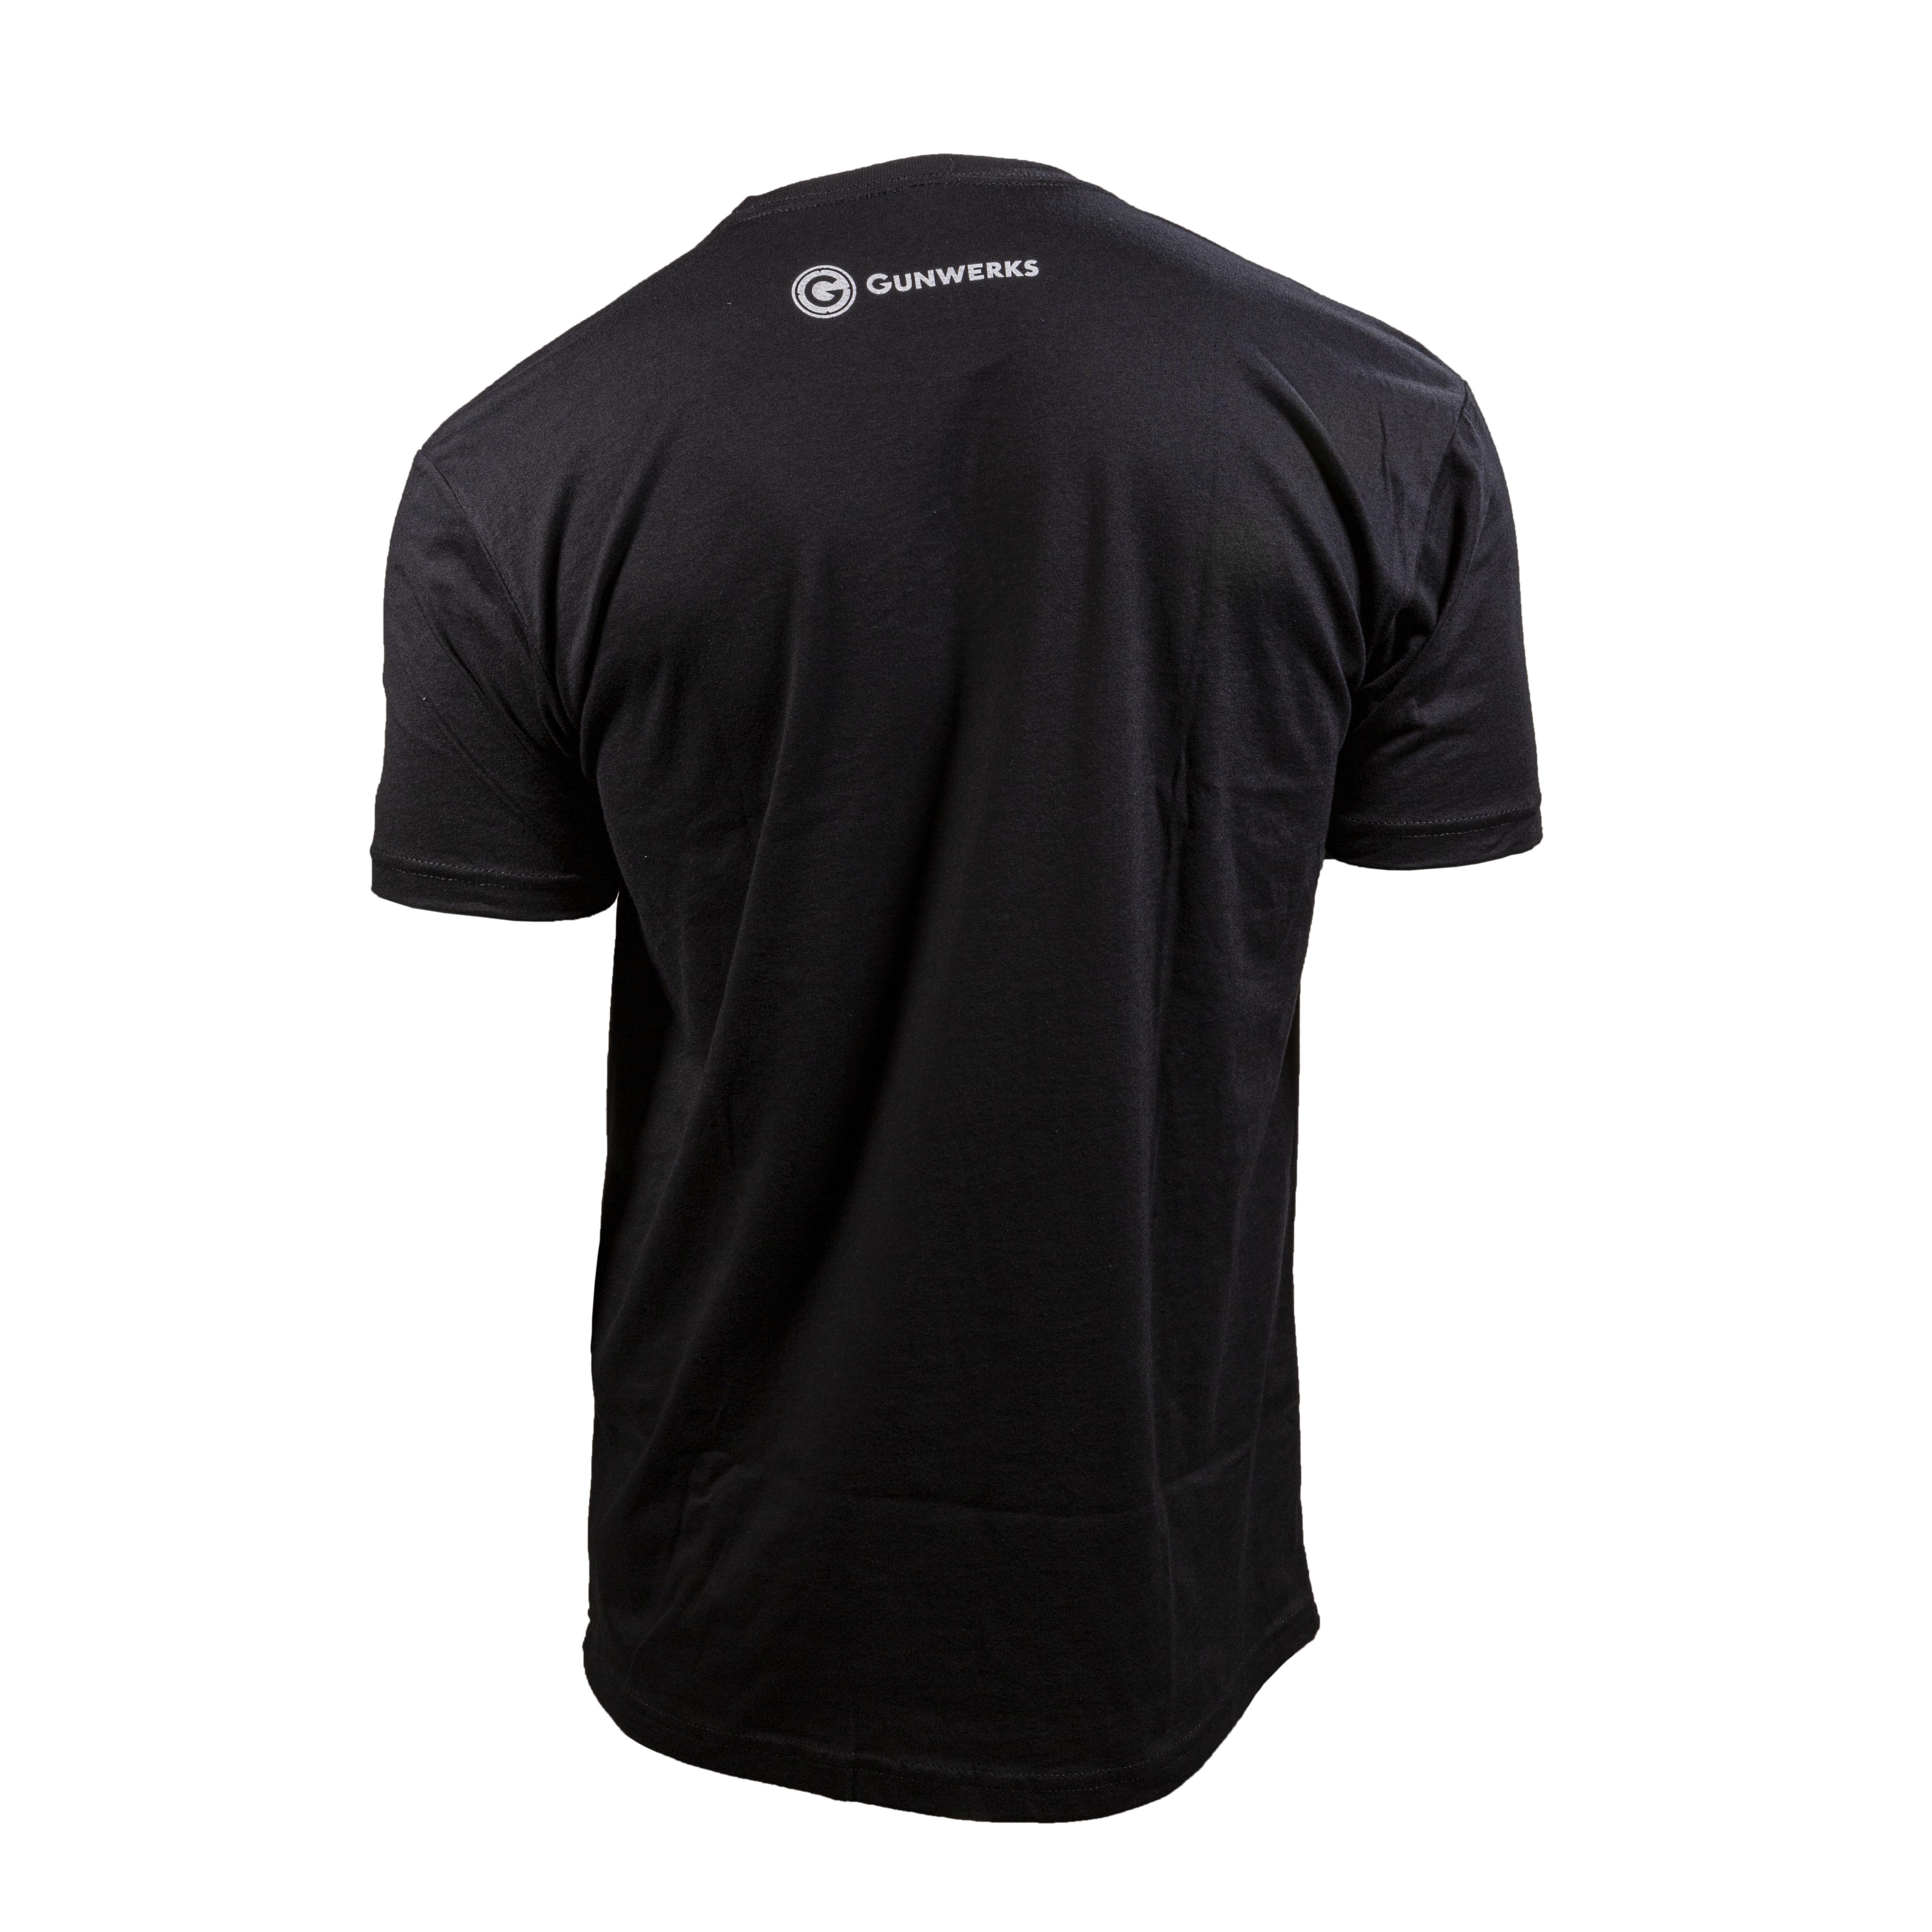 Gunwerks Hiking Man T-Shirt in Black